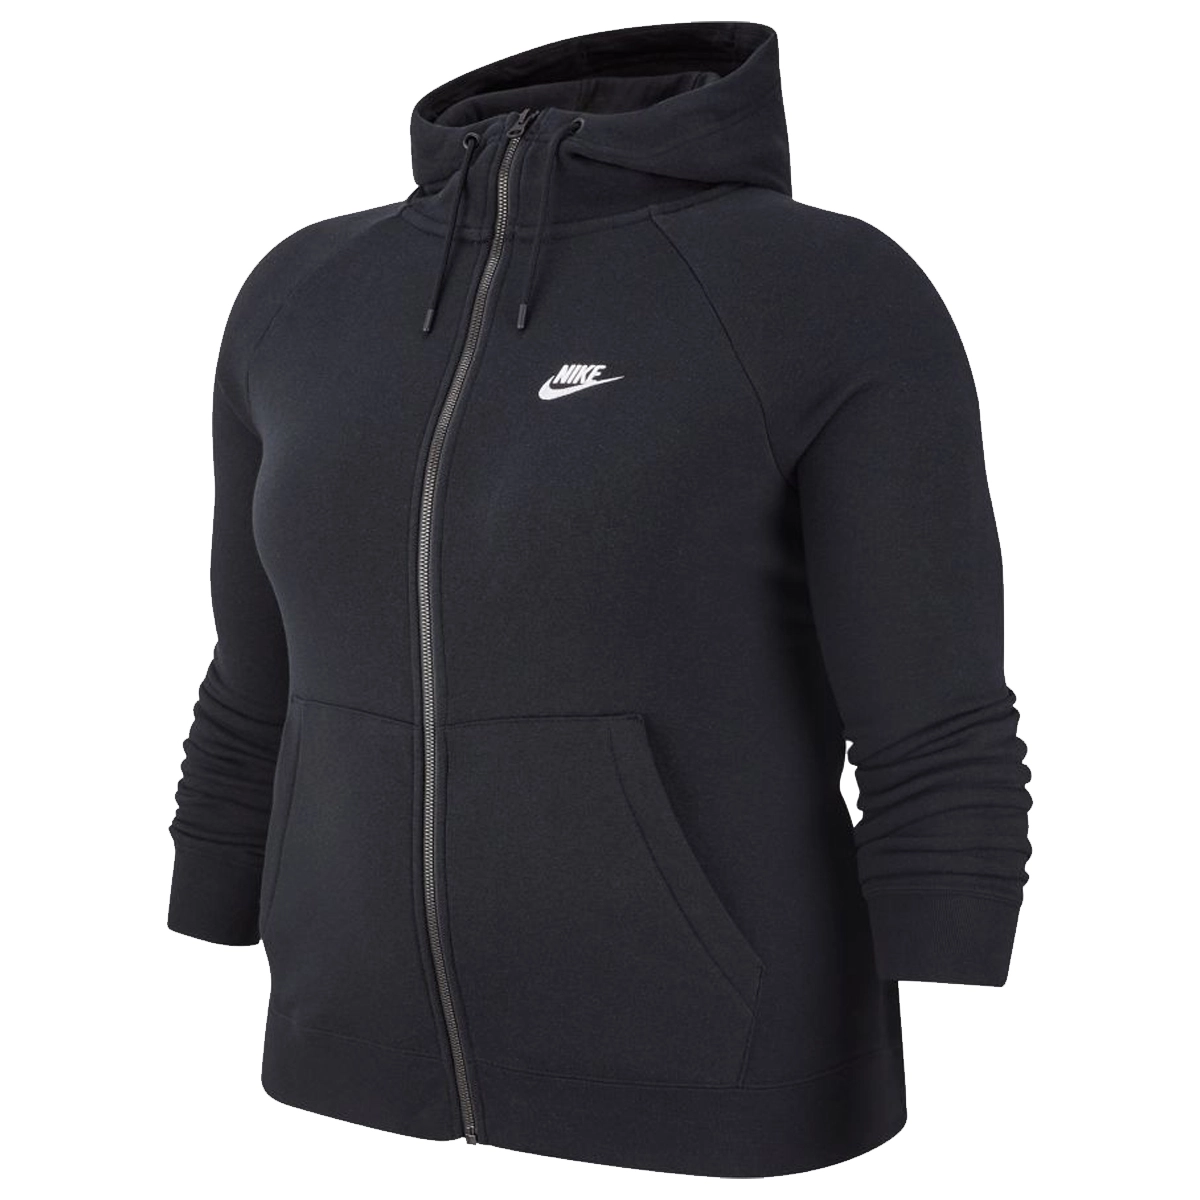 Meting verdacht klep Nike Essential Plus Size Fleece Vest van vesten